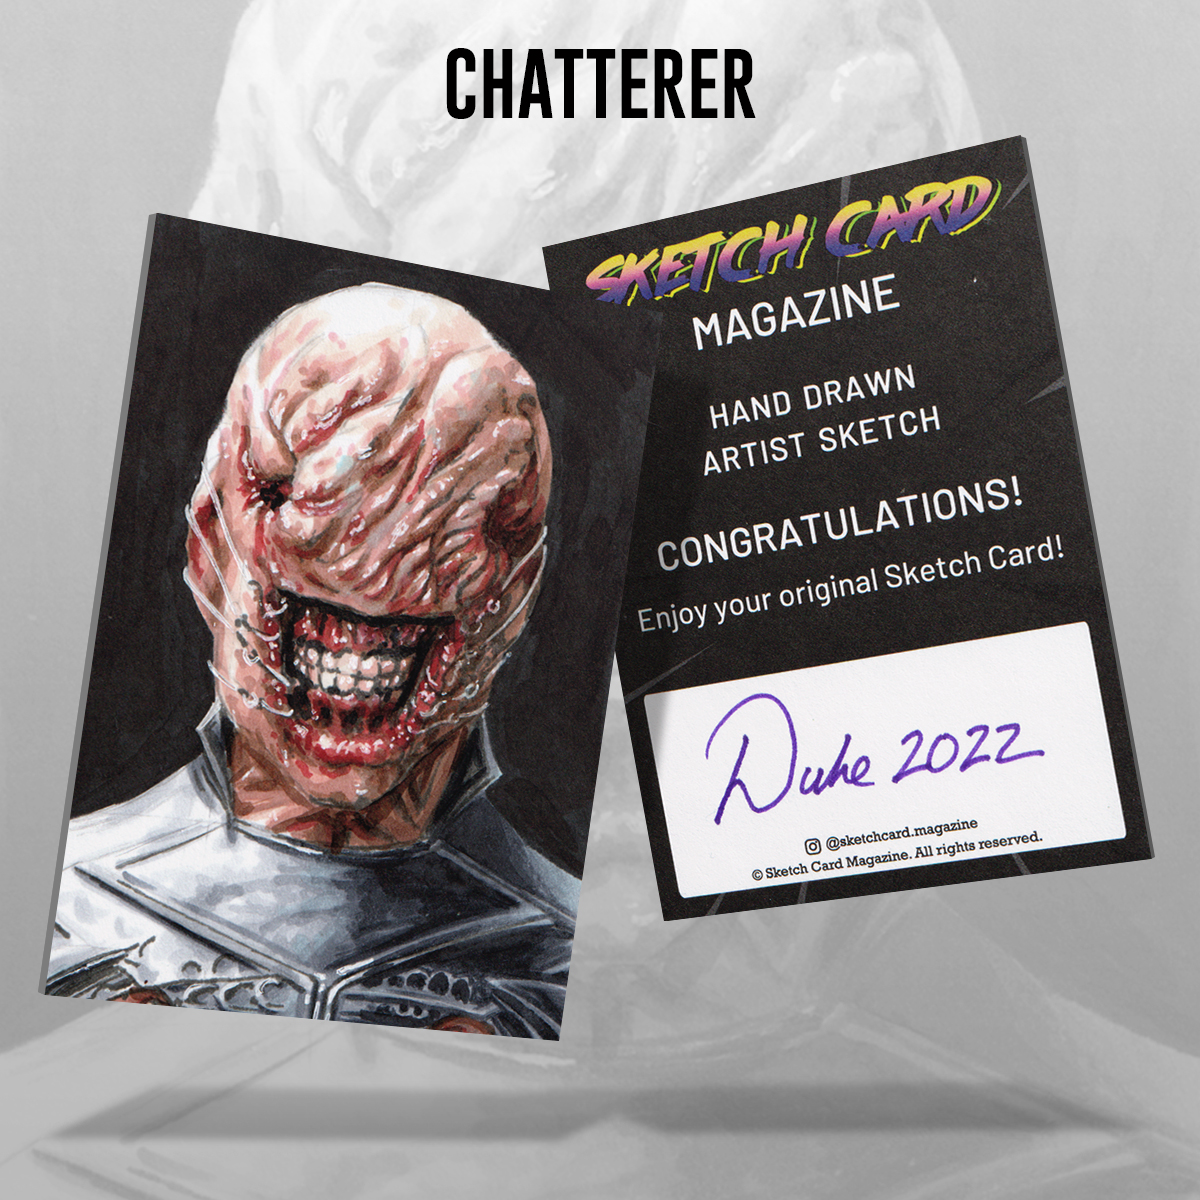 Hellraiser Chatterer Sketch Card by Duke